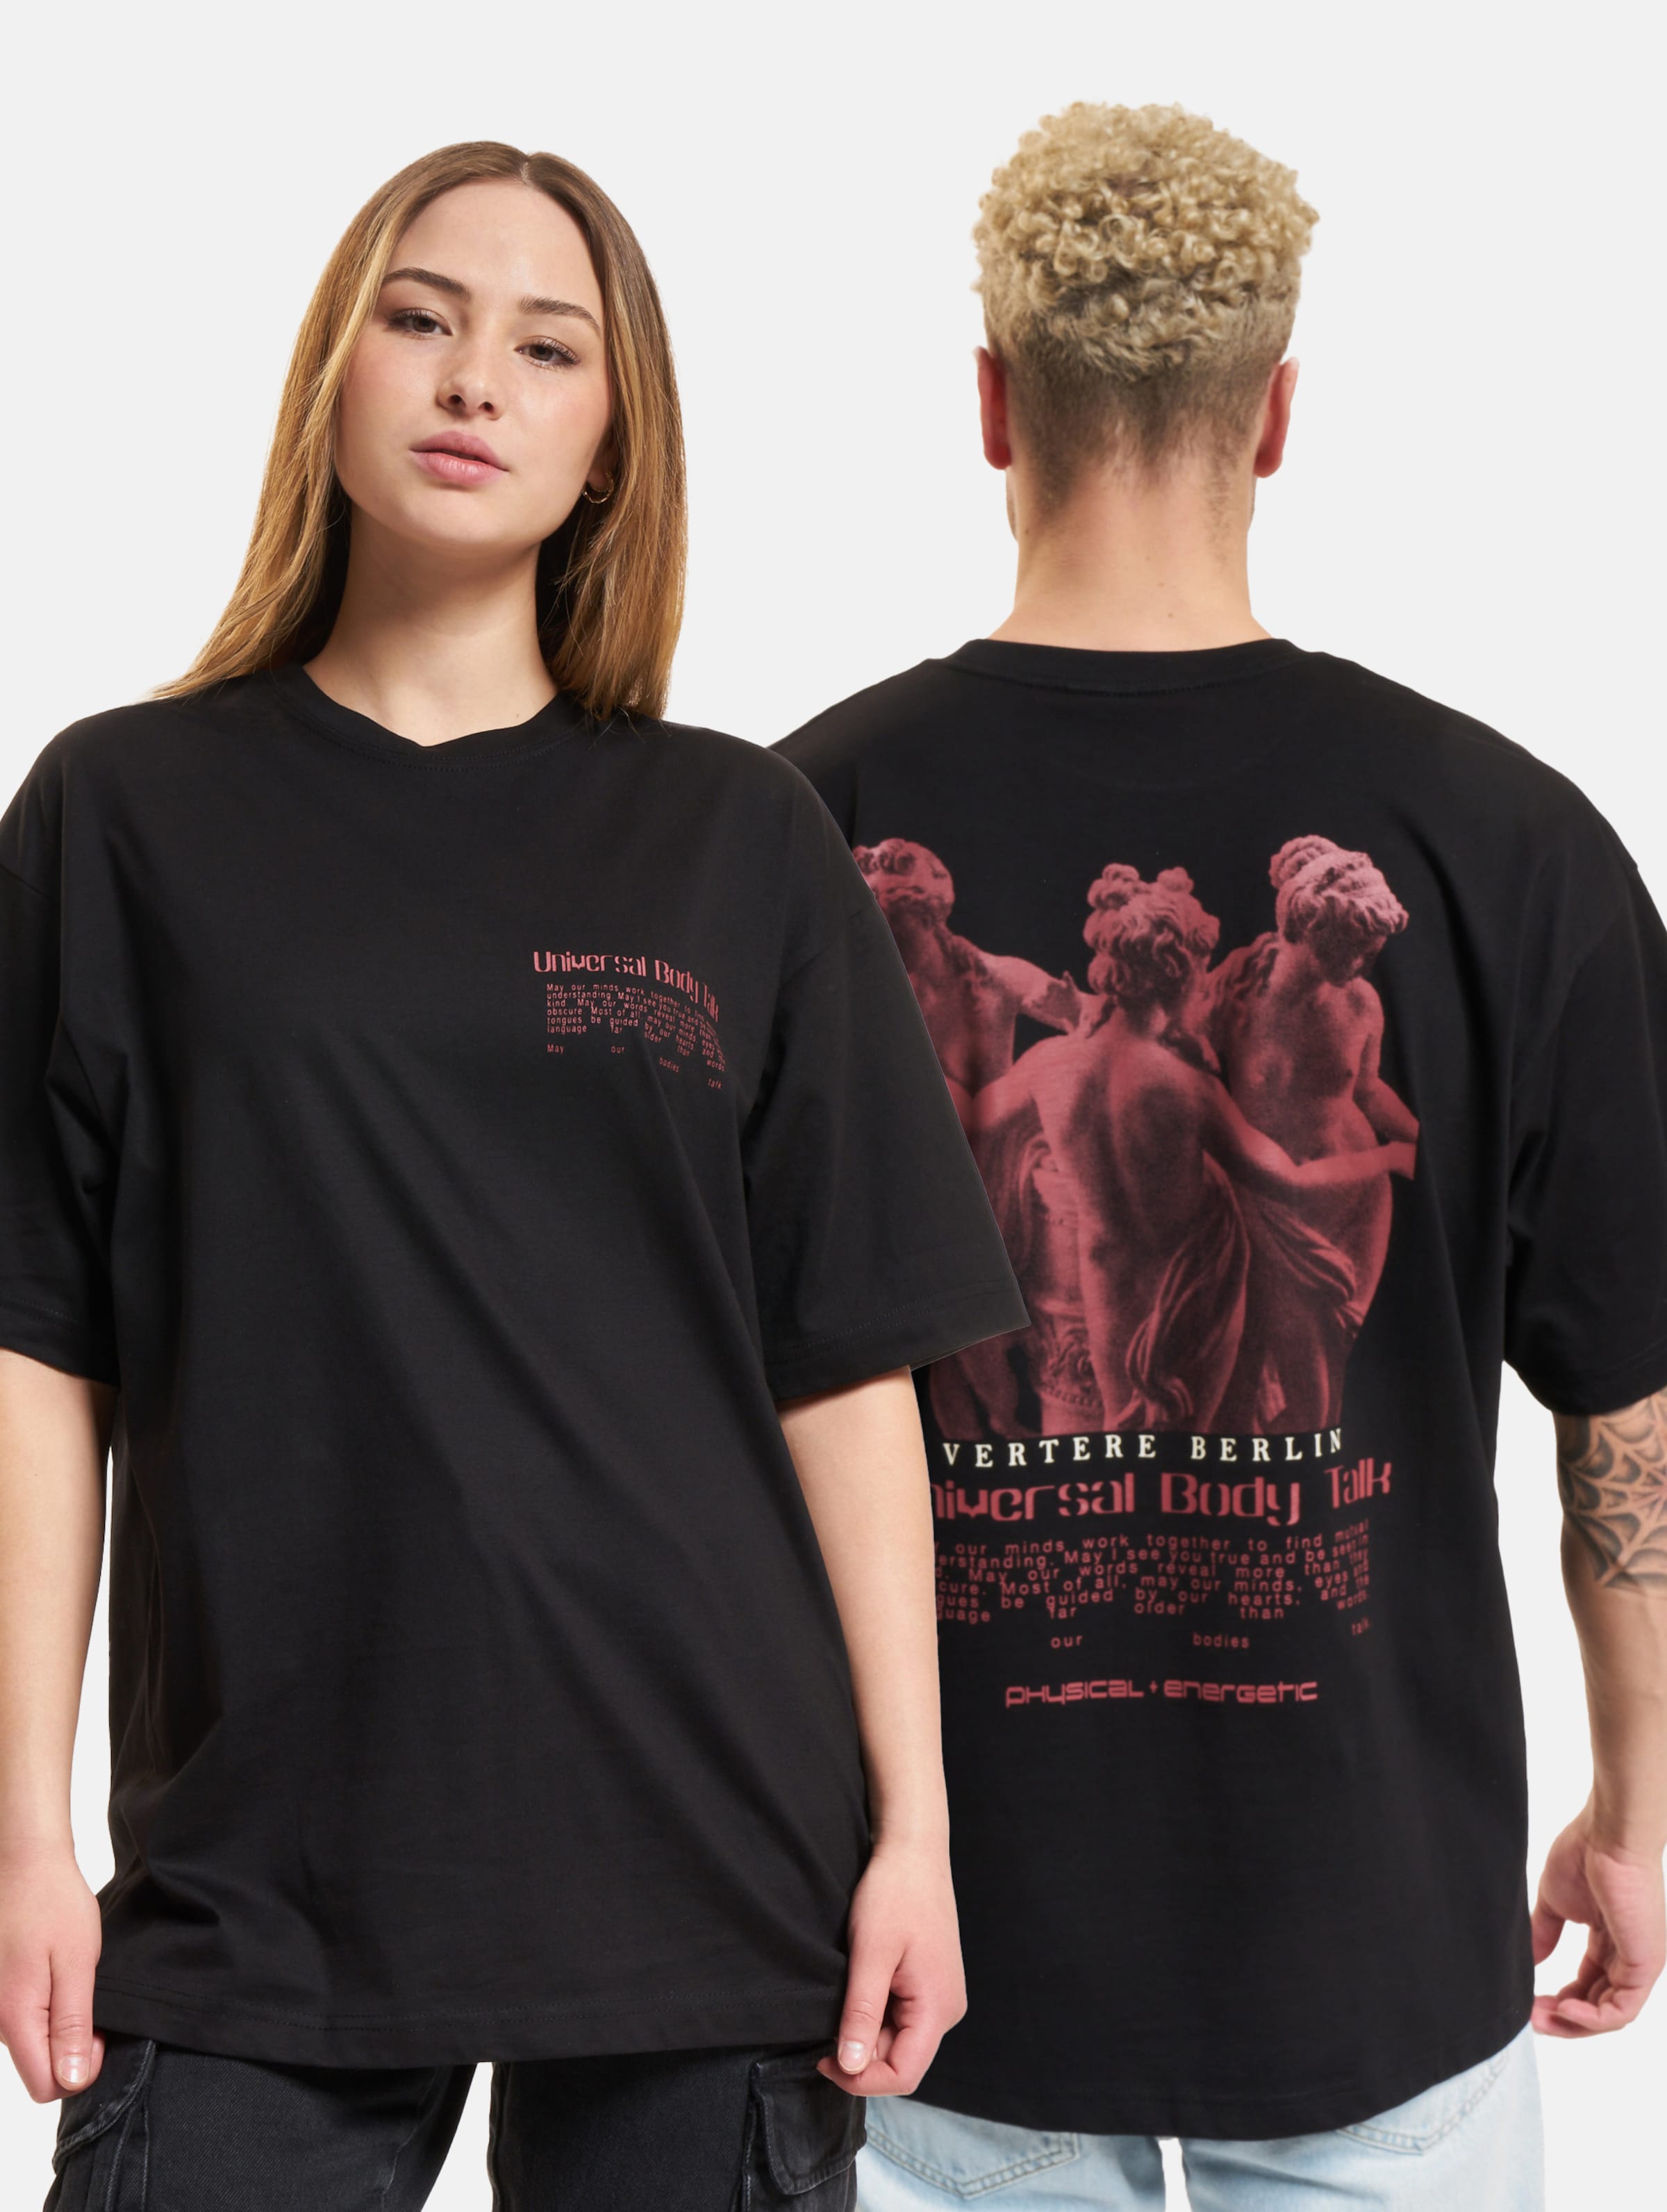 Vertere Berlin Universal Body Talk T-Shirt Frauen,Männer,Unisex op kleur zwart, Maat S